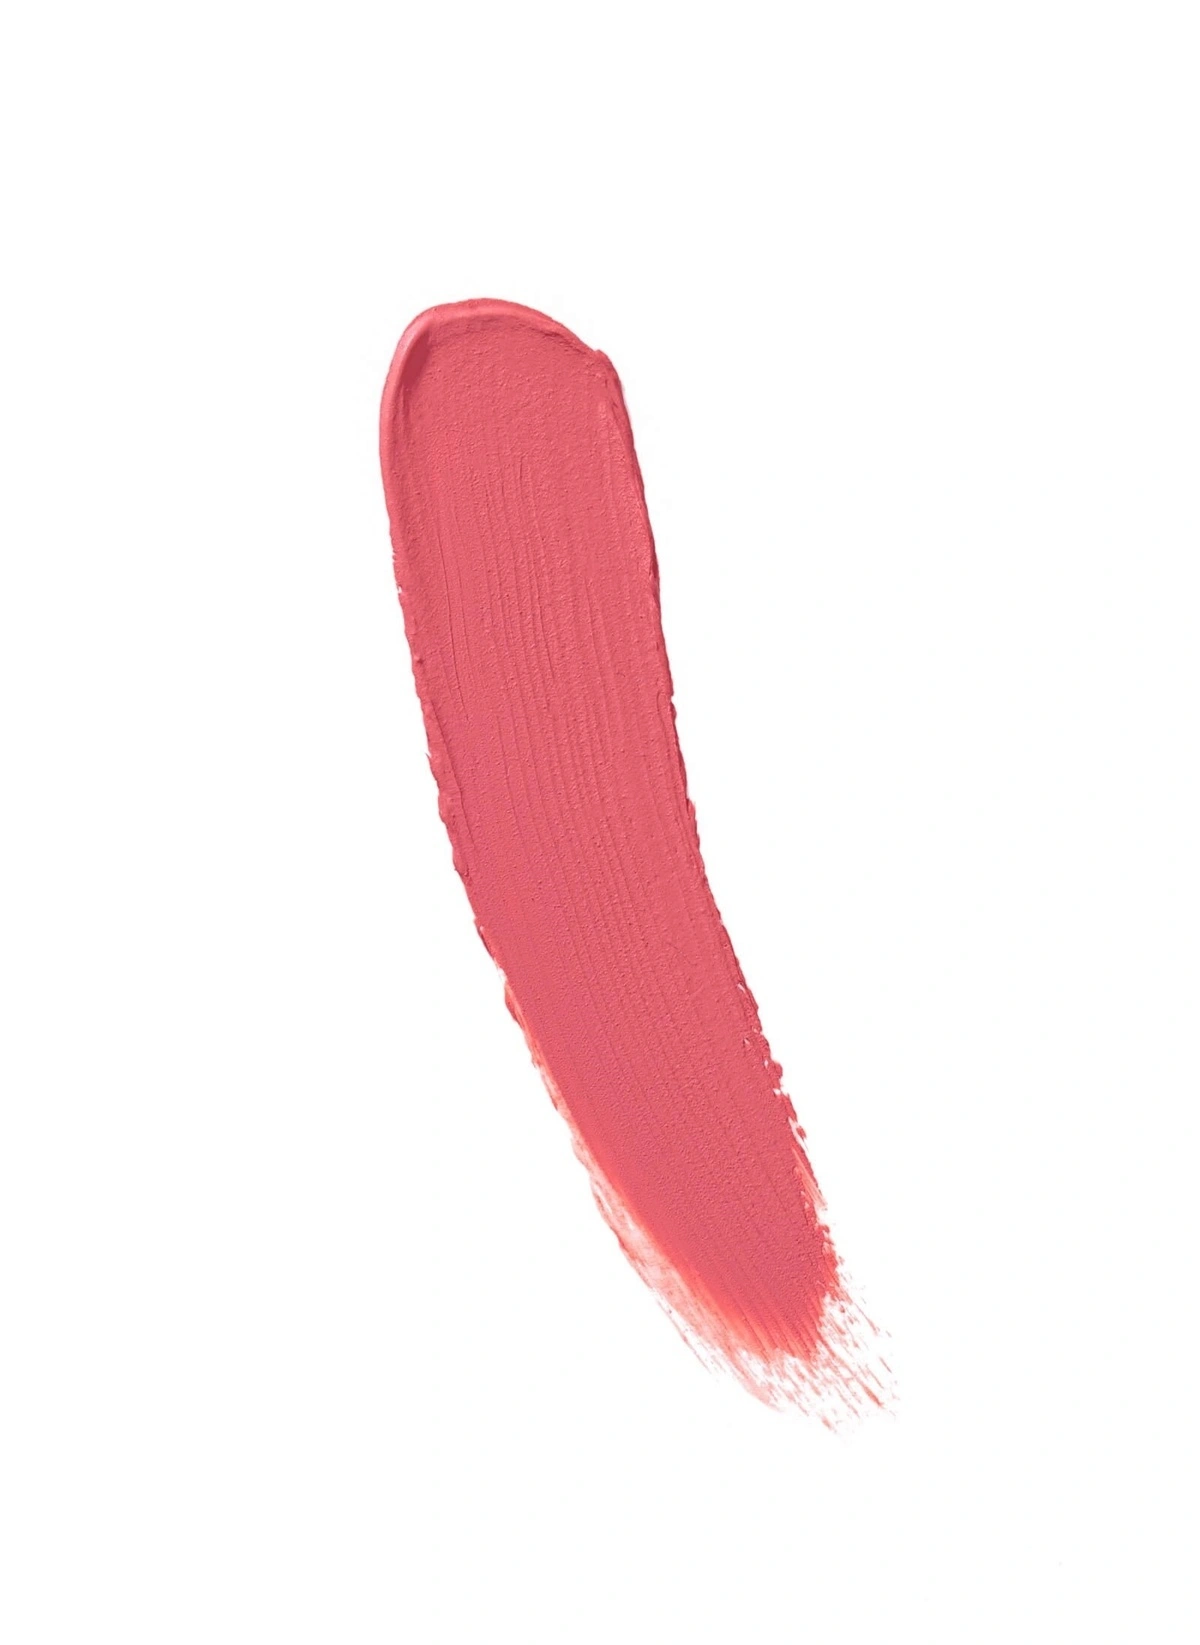 Flormar Silk Matte Liquid Lipstick 13 Pink Dream